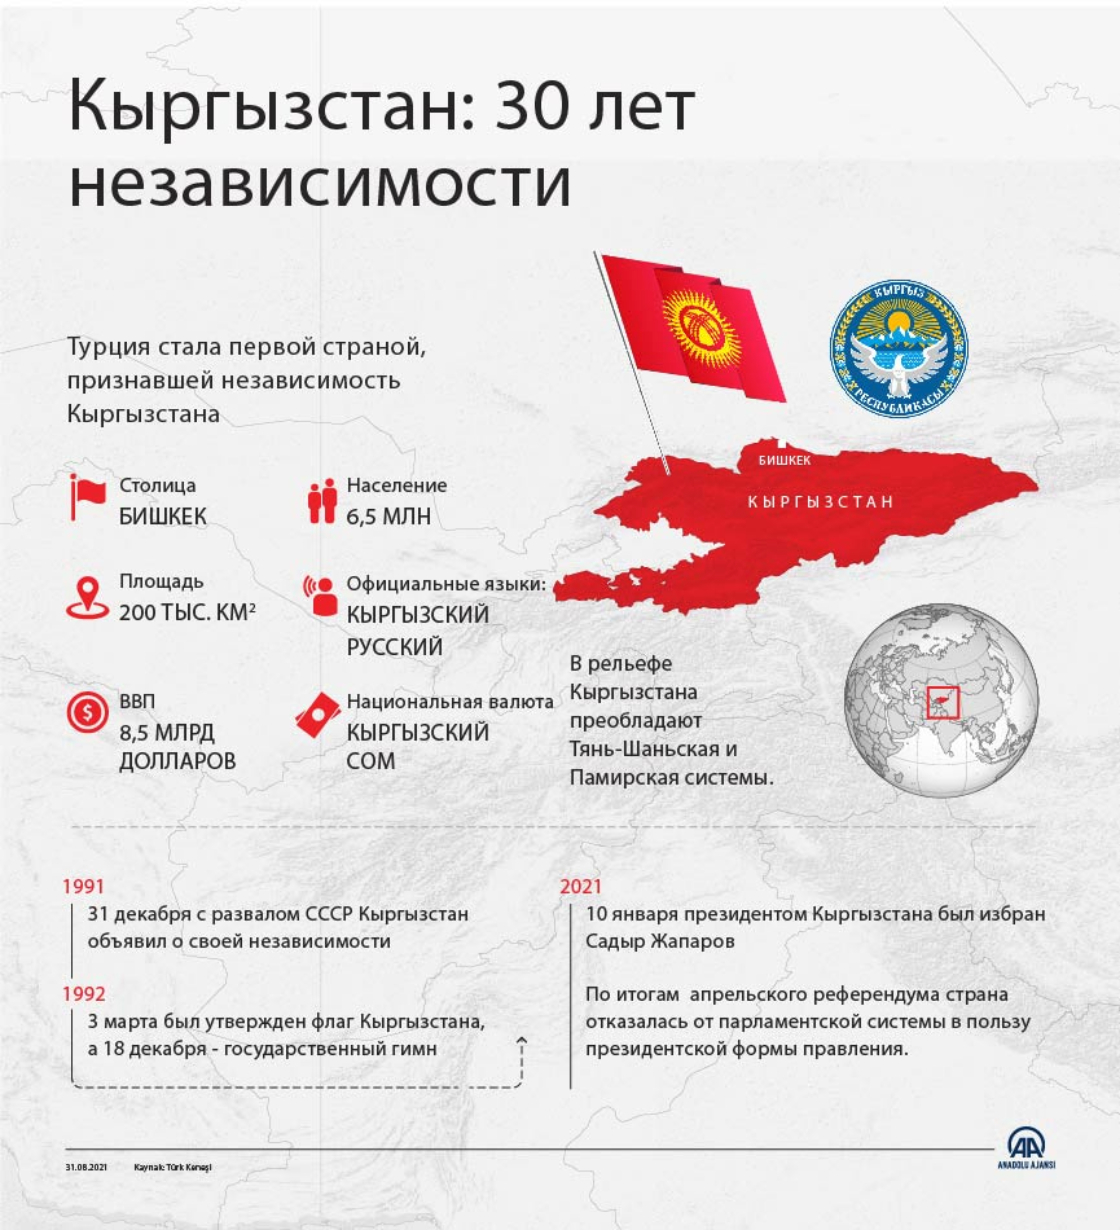 Кыргызстан отмечает 30-ю годовщину независимости